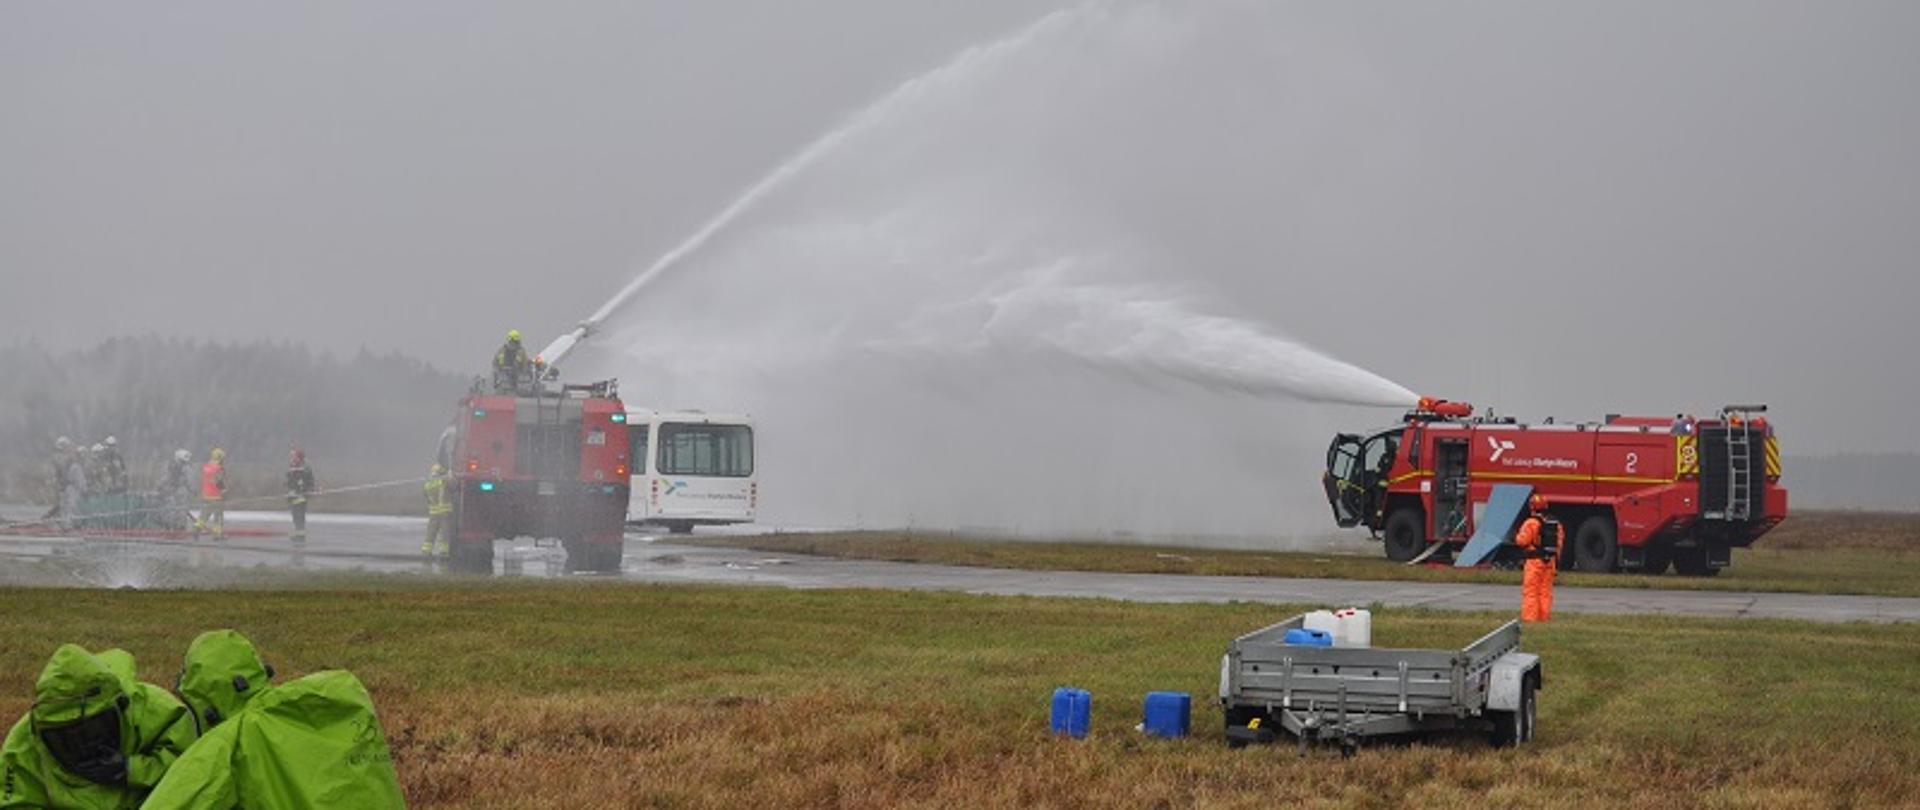 Zdjęcie przedstawia gaszenie pożaru samolotu